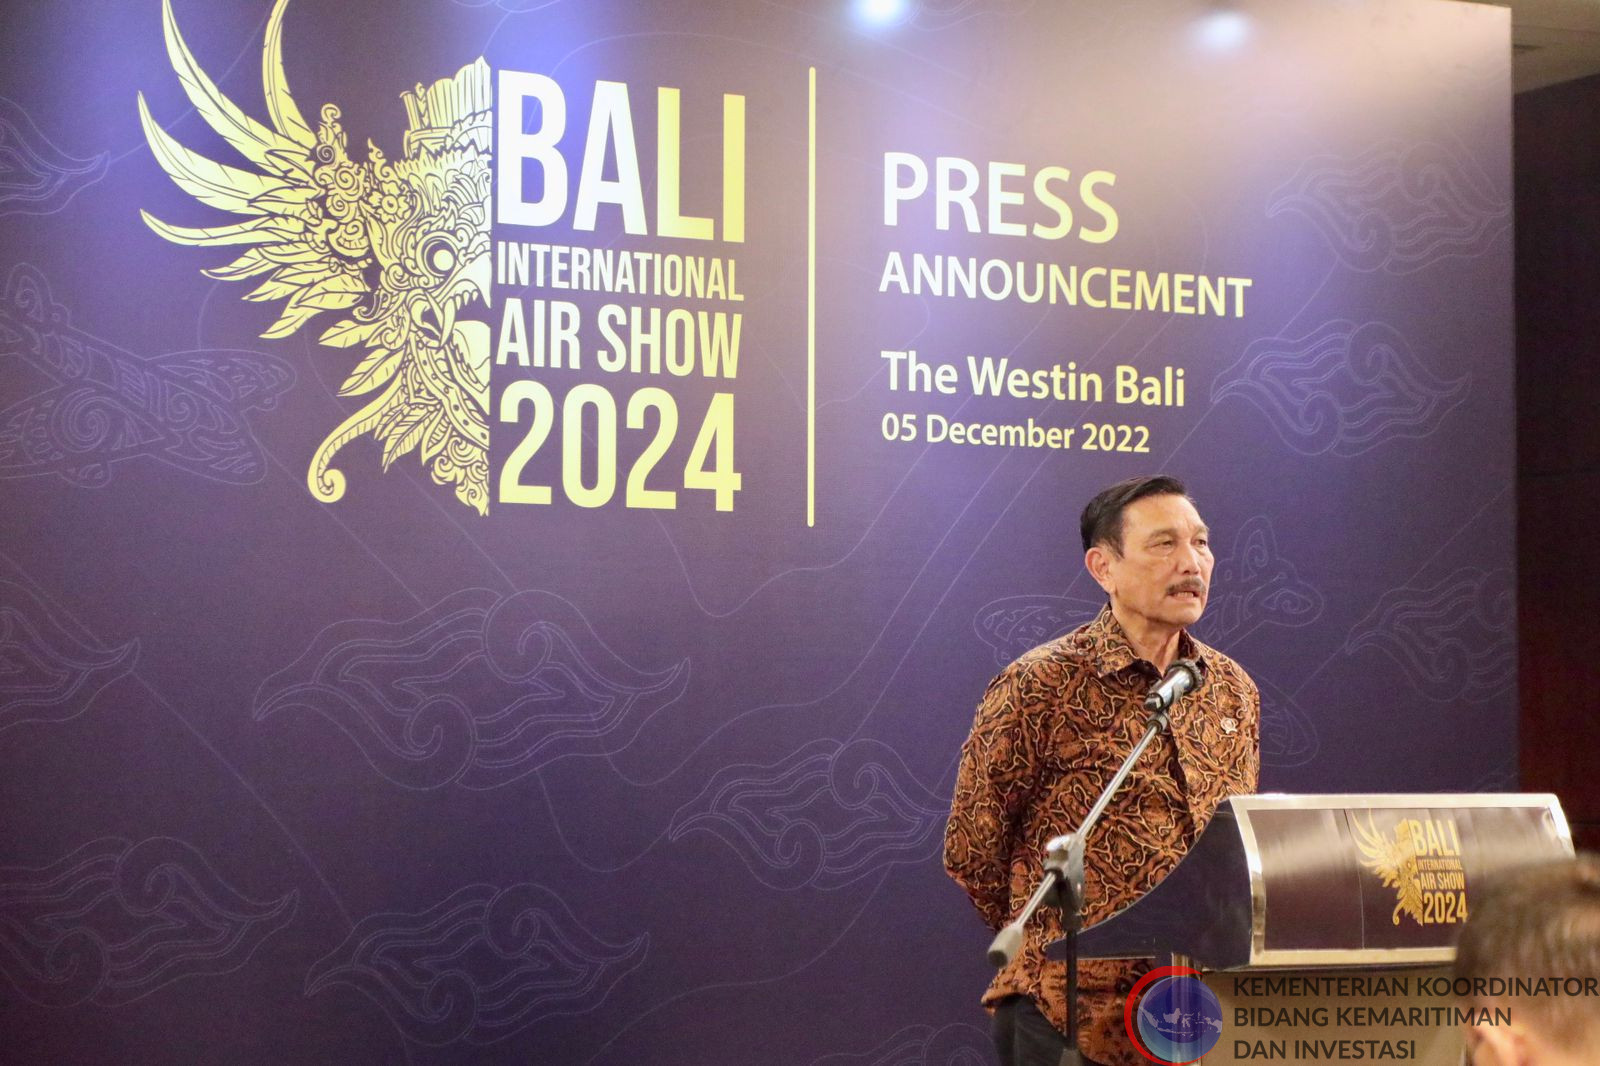 Jelang Bali International Airshow 2024, Menko Luhut Berpesan agar Persiapan Matang dan Waspadai Kepadatan Air Traffic